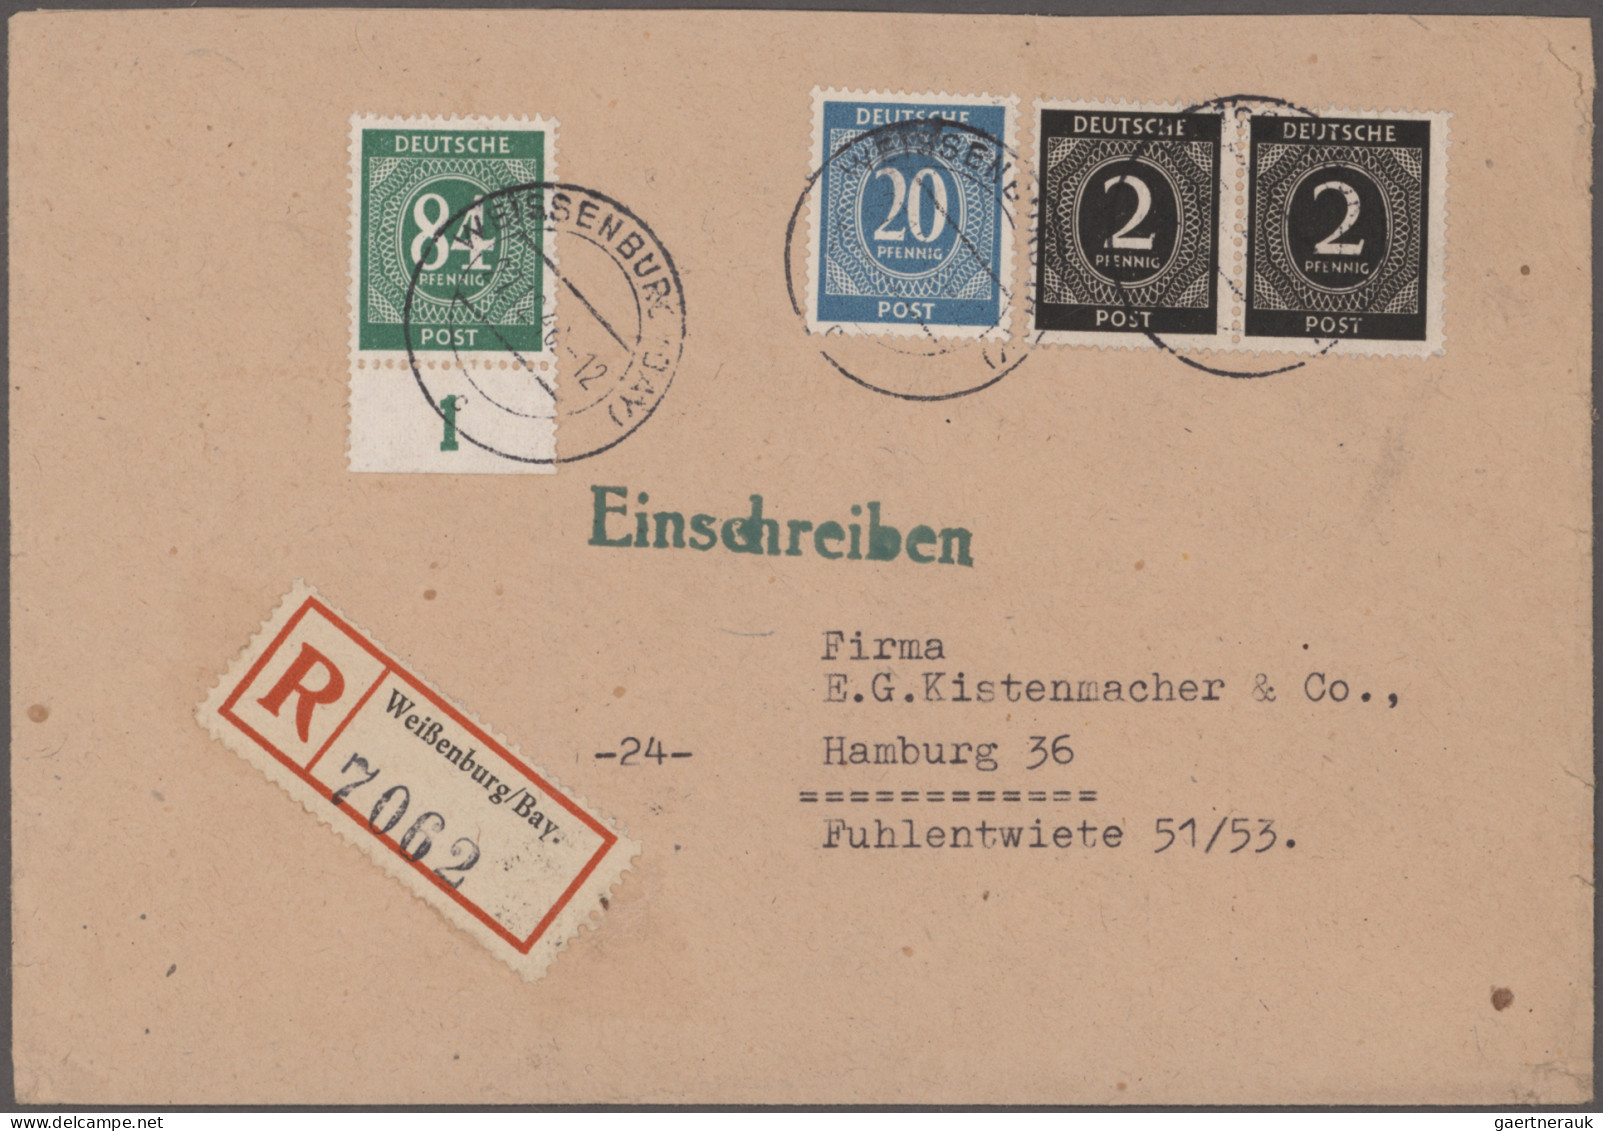 Deutschland ab 1945 - Gebühr Bezahlt: 1946/1948, spannende Partie im Karton, dab